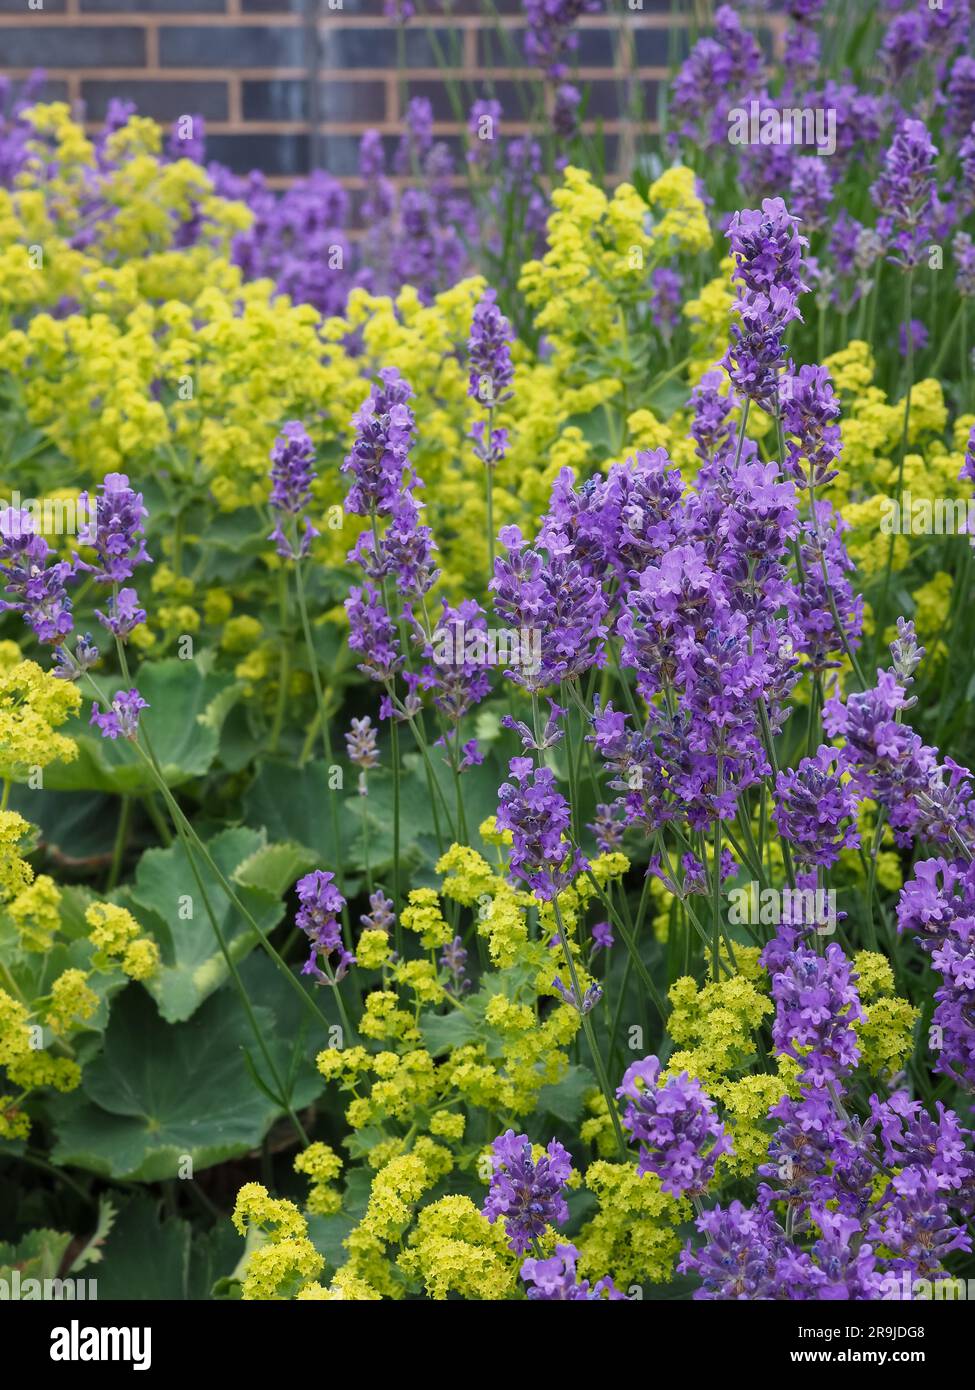 Alchemilla mollis (manteau de Dame) et Lavandula angustifolia (lavande anglaise) montrant des fleurs contrastées vert citron / jaune et violet en été Banque D'Images